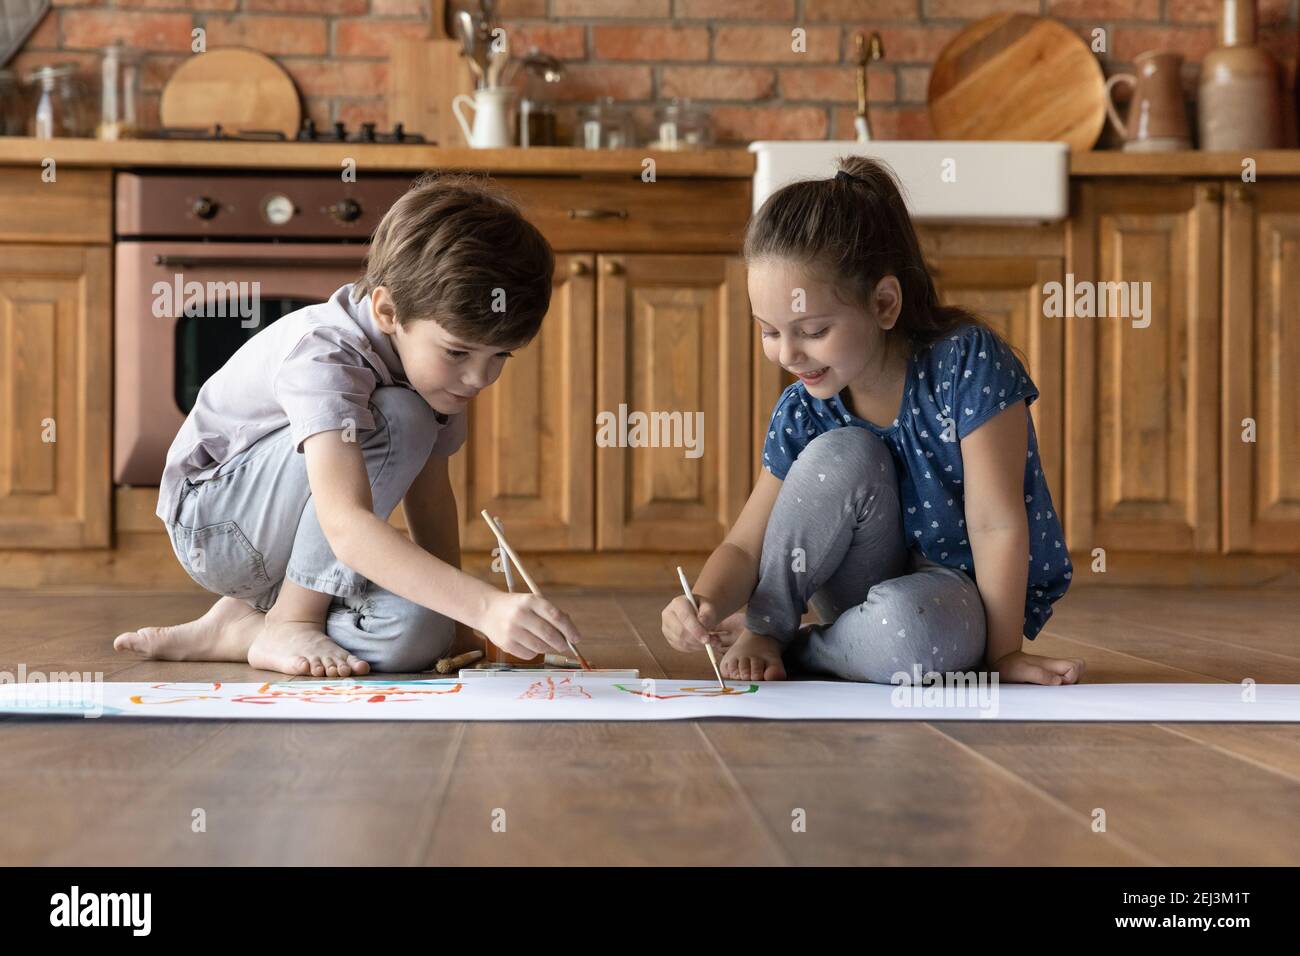 Deux petits enfants peignent de l'aquarelle colorée, assis sur le sol Banque D'Images